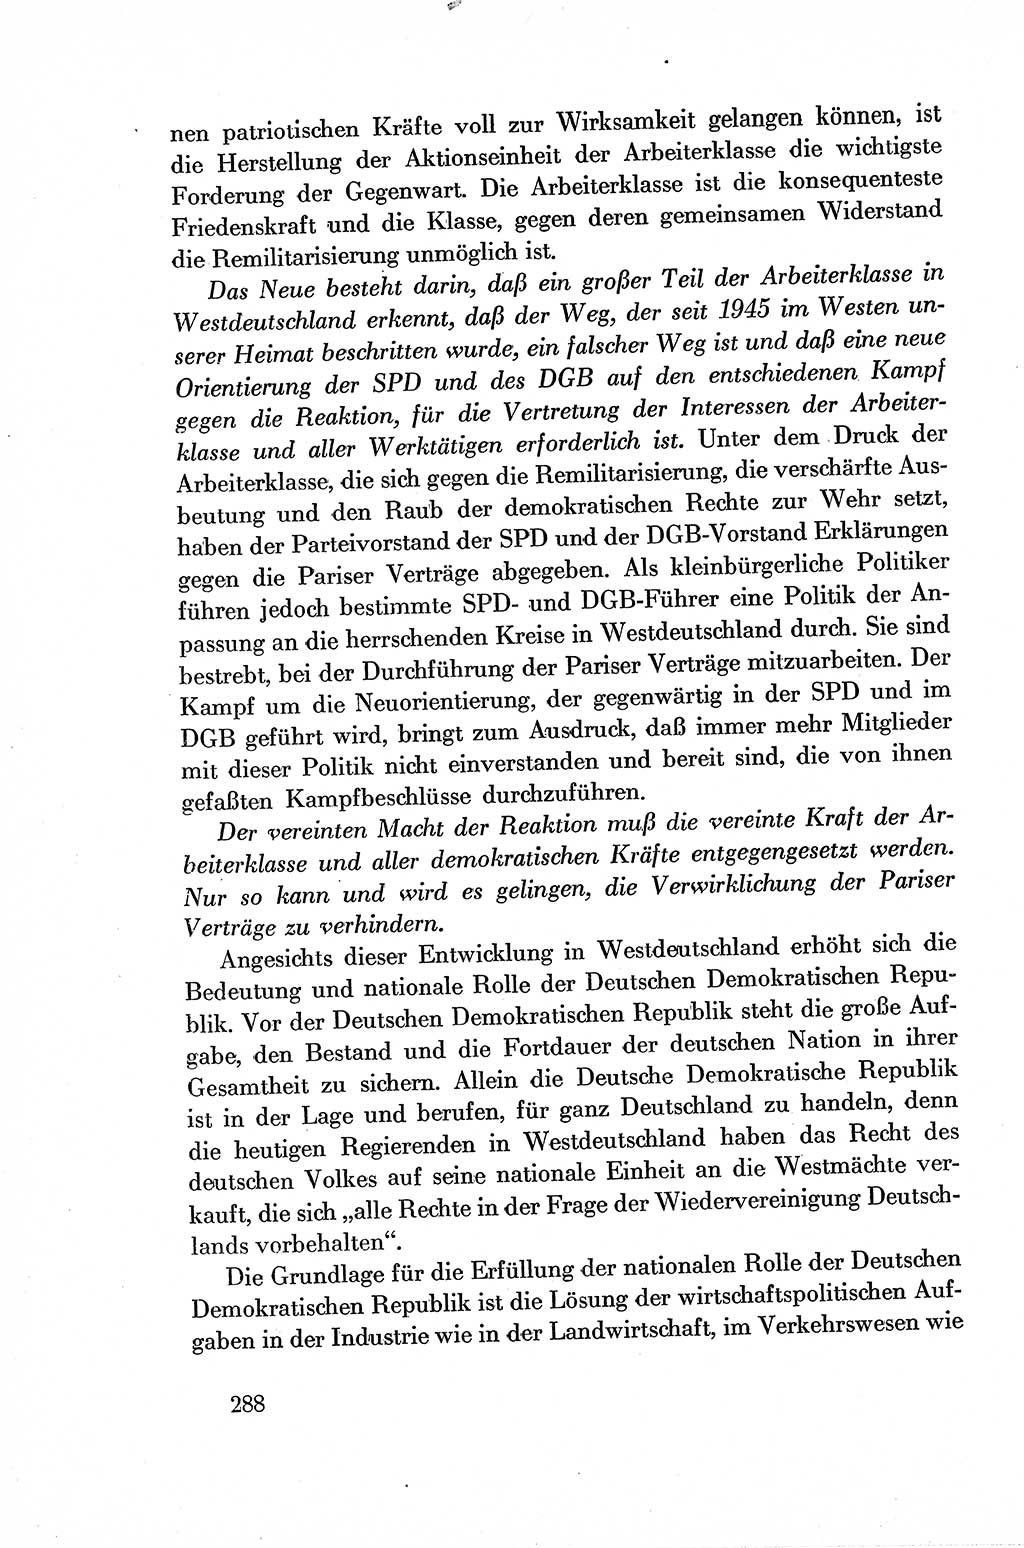 Dokumente der Sozialistischen Einheitspartei Deutschlands (SED) [Deutsche Demokratische Republik (DDR)] 1954-1955, Seite 288 (Dok. SED DDR 1954-1955, S. 288)